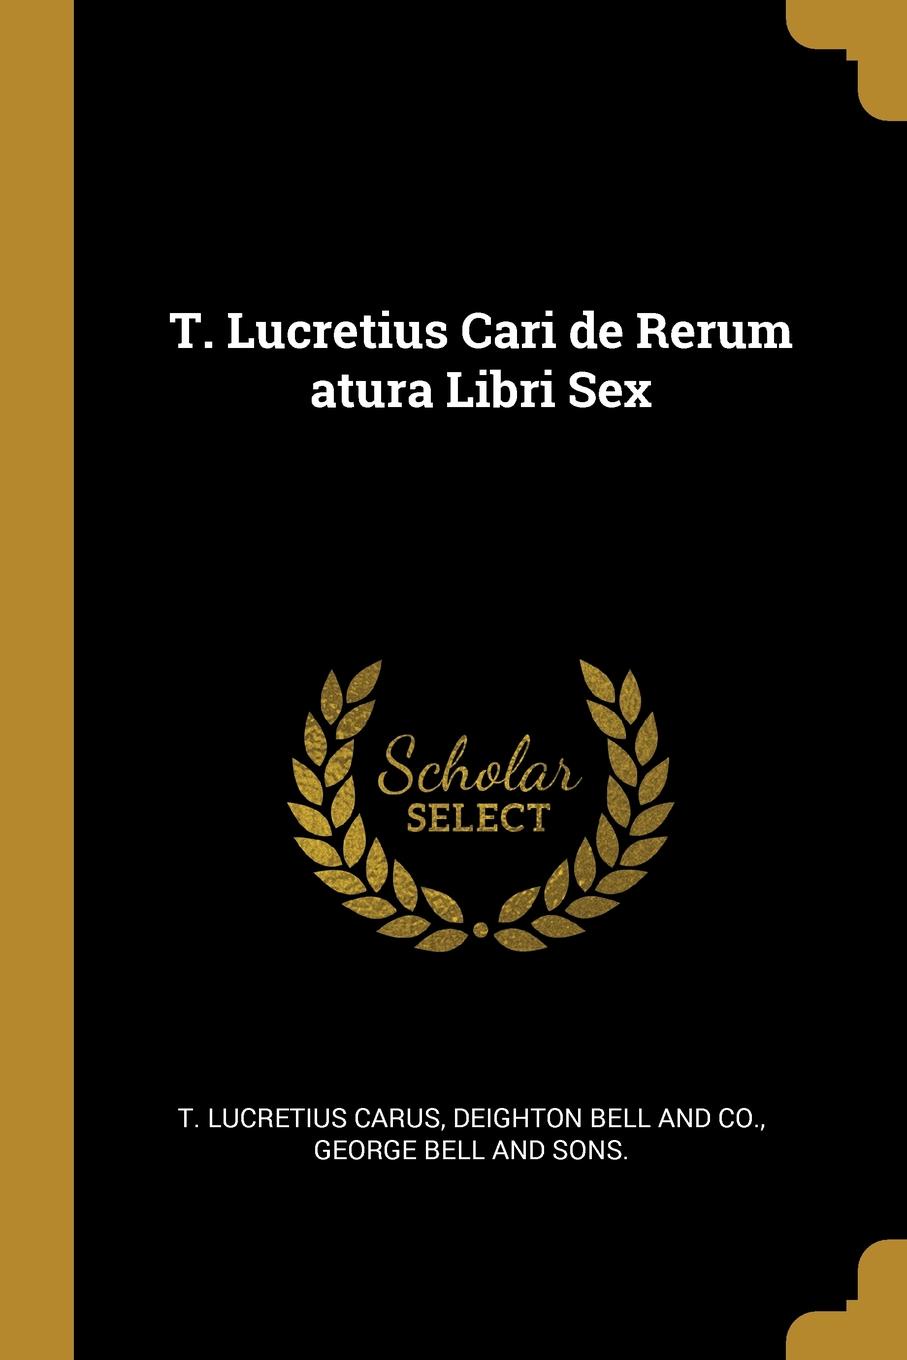 T. Lucretius Cari de Rerum atura Libri Sex